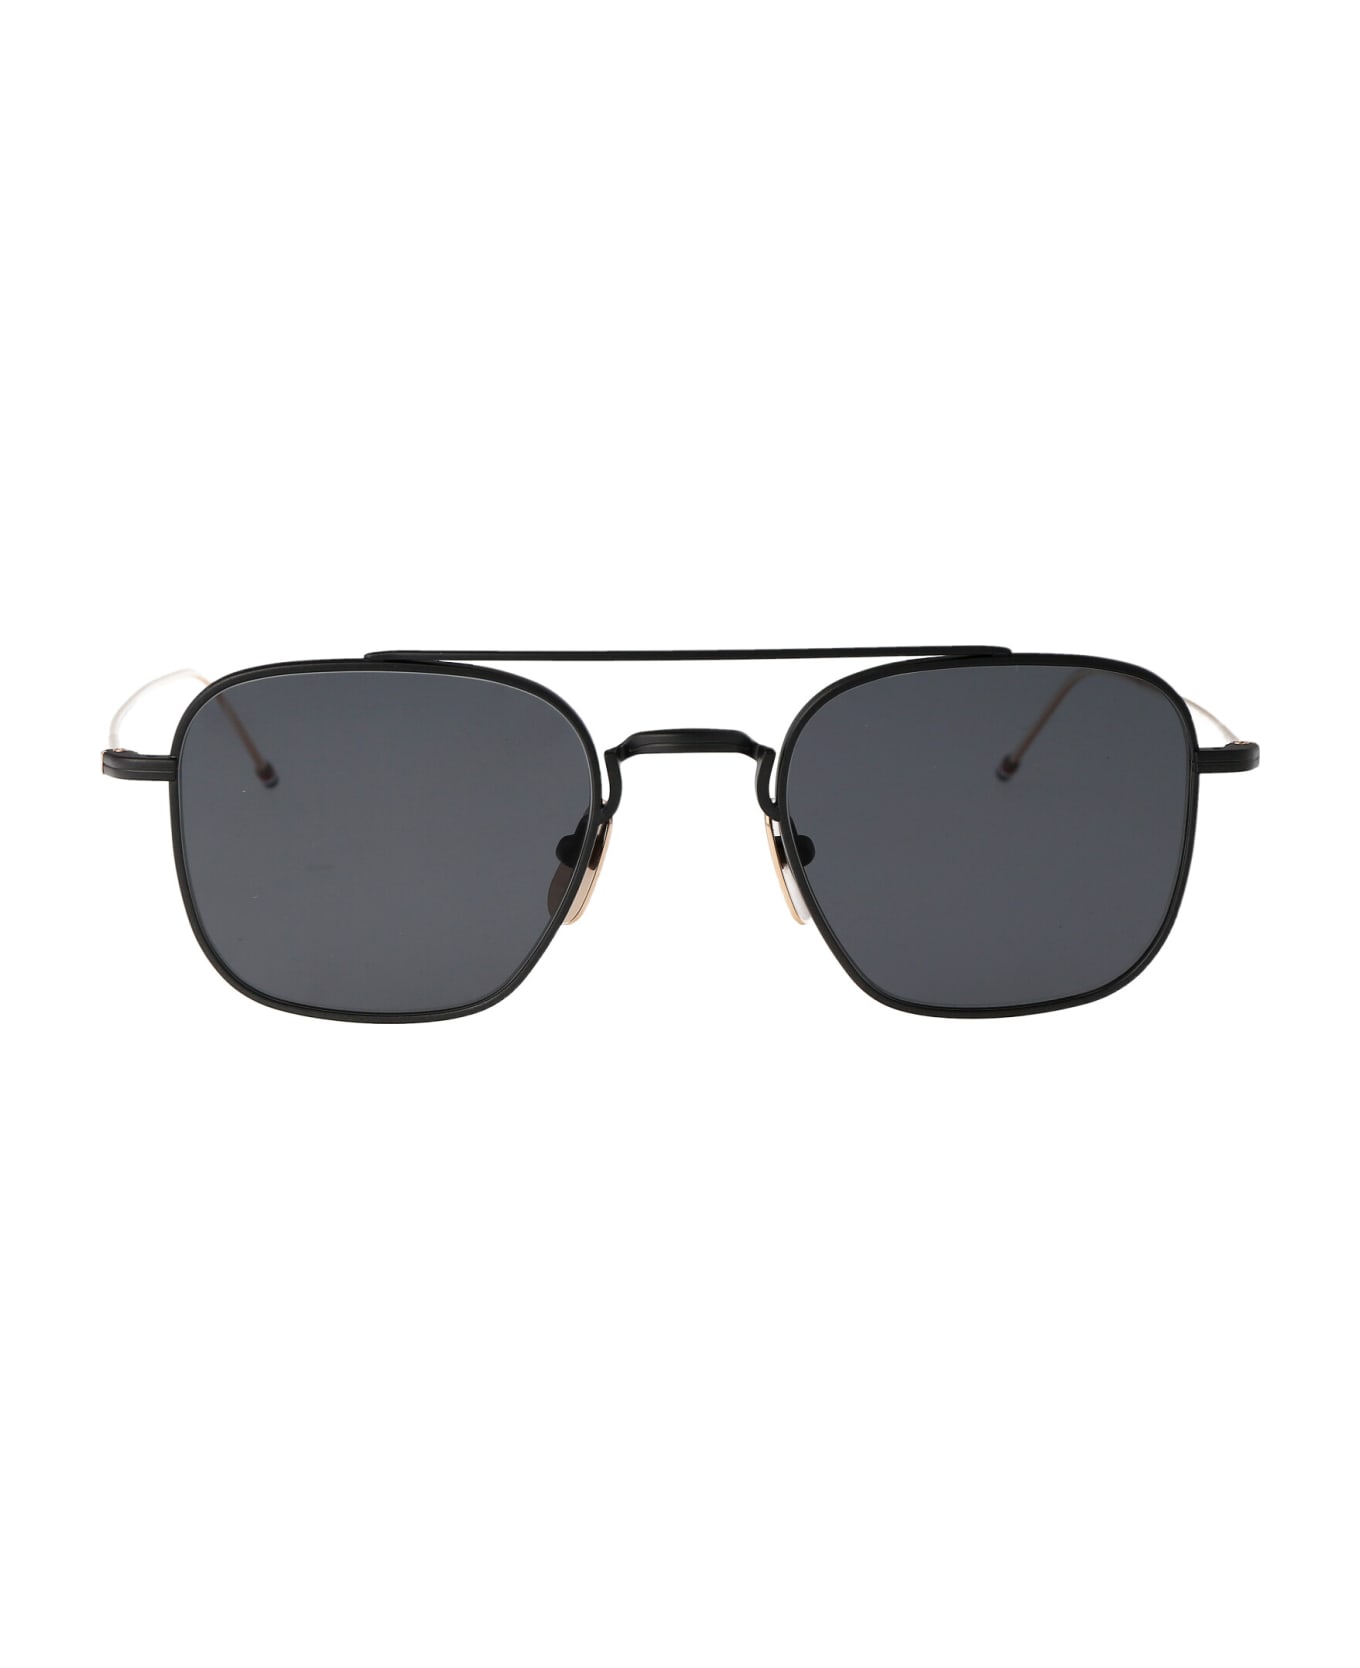 Thom Browne Ues907a-g0001-005-50 Sunglasses - 005 BLACK サングラス